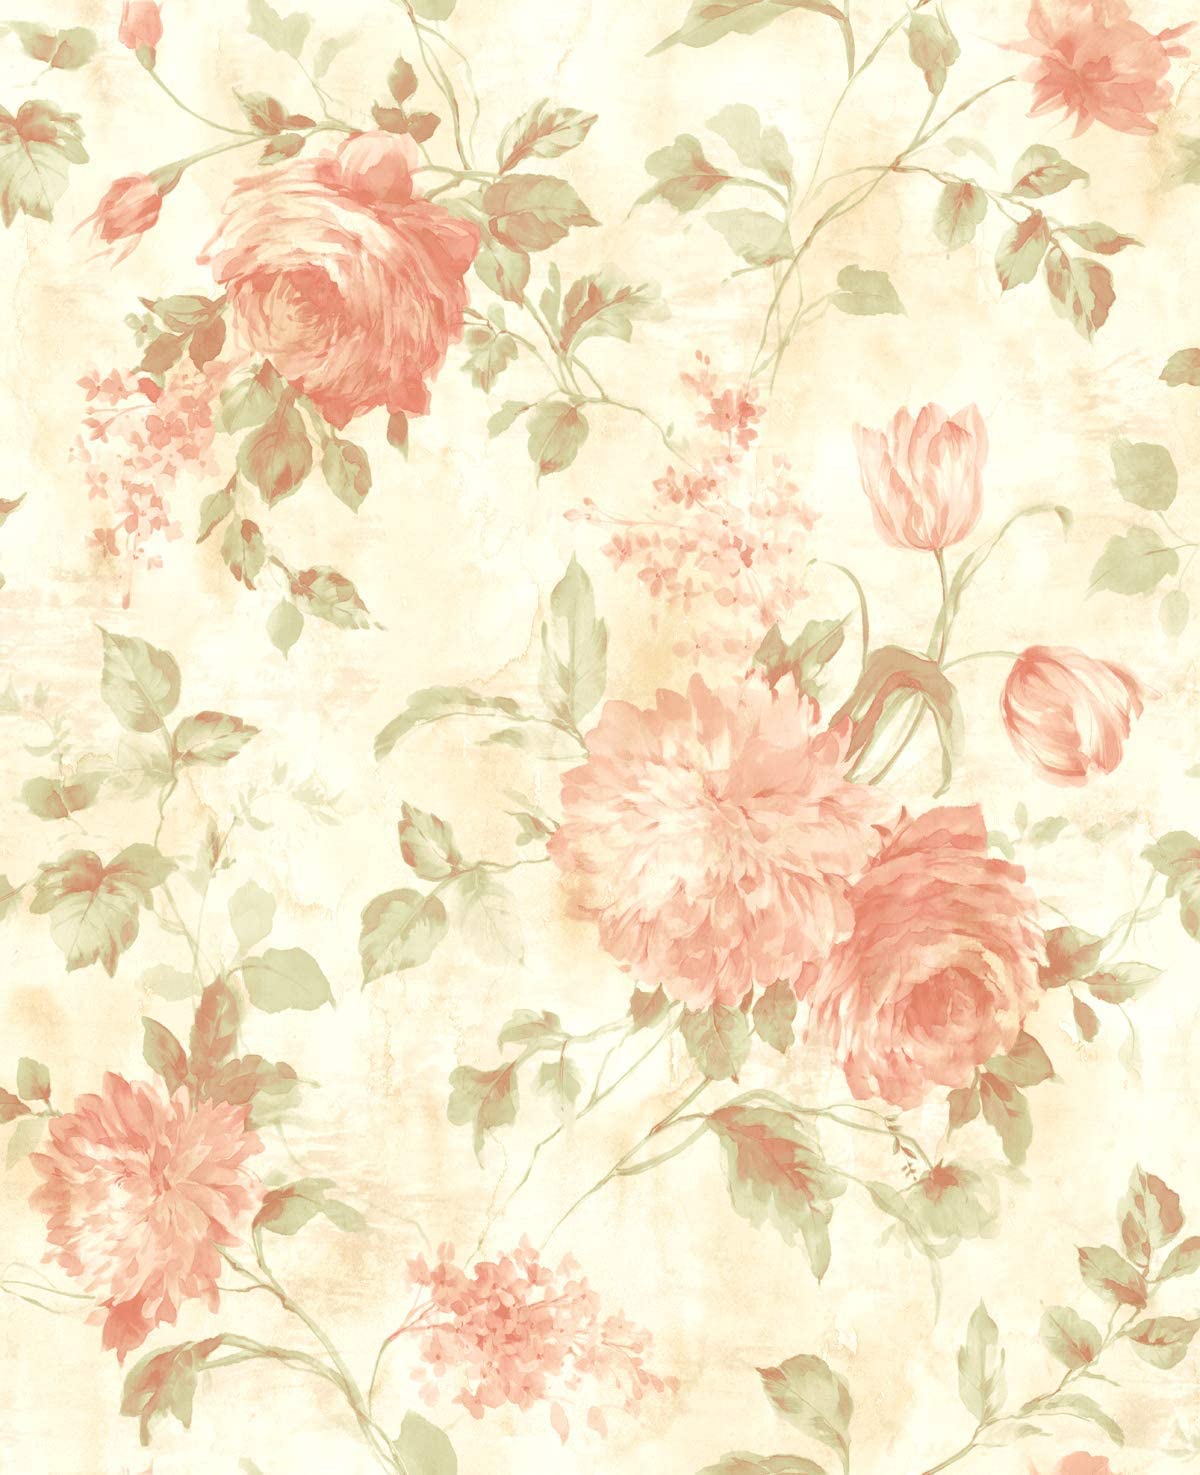 Mãn nhãn với họa tiết hoa hồng màu hồng trên nền trắng đậm chất Vintage. Bức ảnh Pink Floral Pattern Wallpaper sẽ mang đến cho bạn cảm giác yên bình, tinh tế và không gian sinh động hơn.